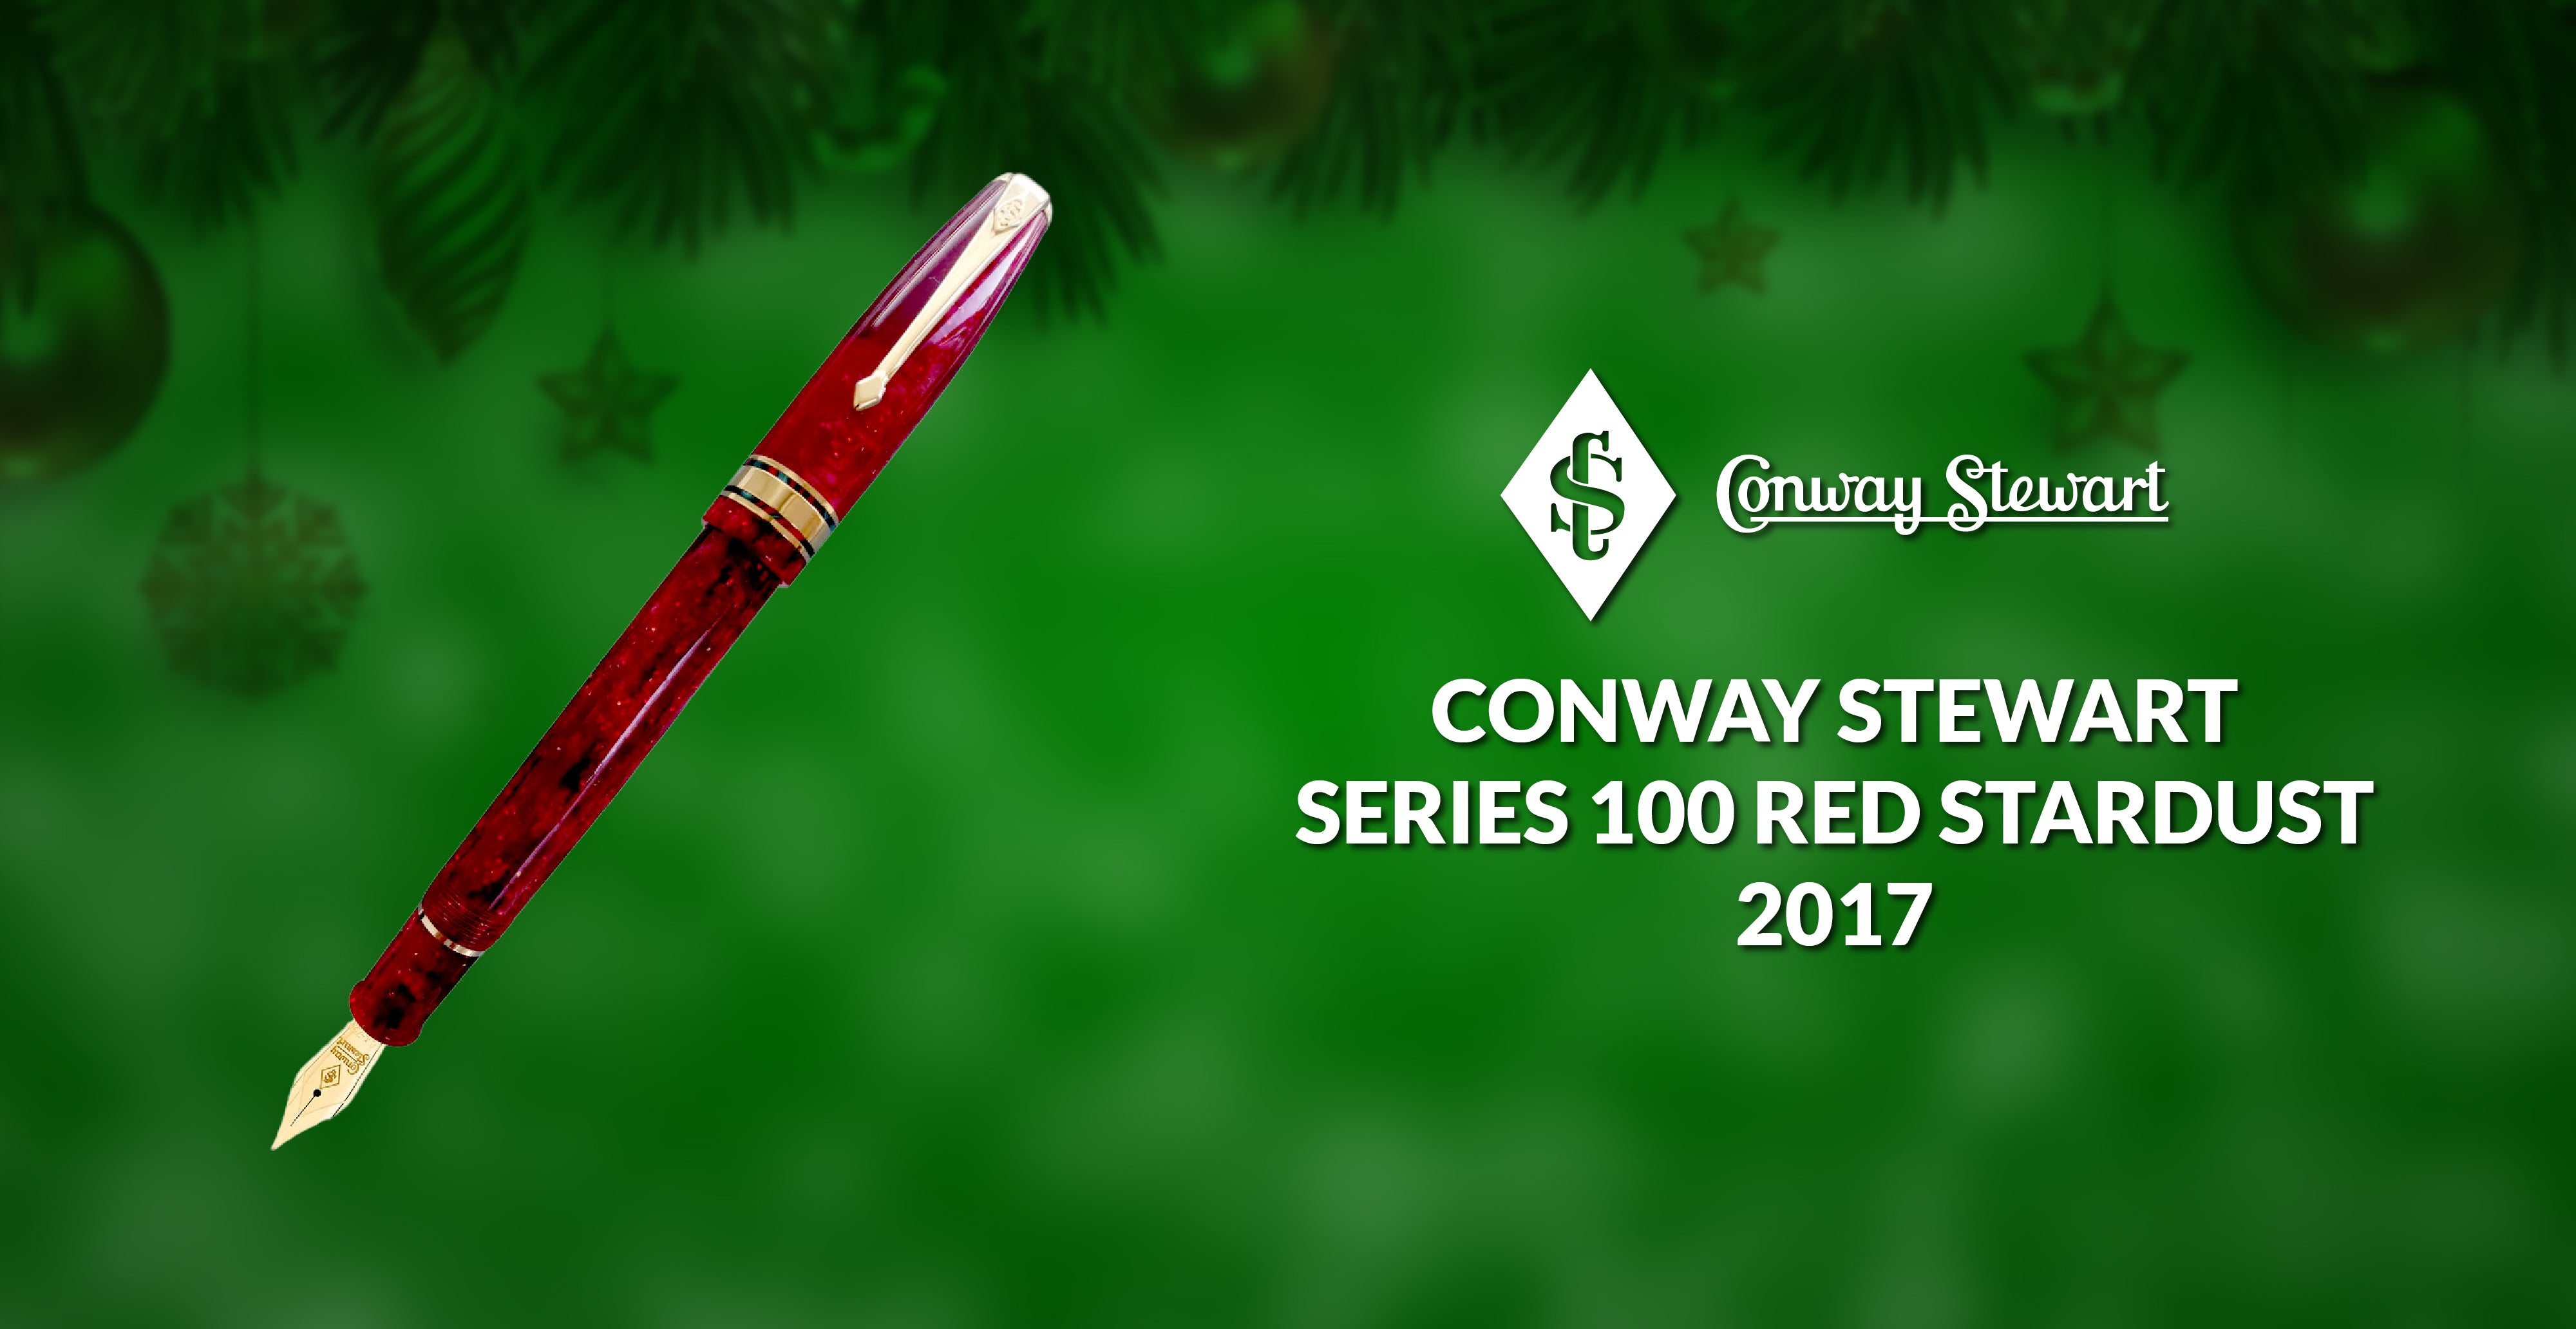 Conway Stewart Series 100 Red Stardust, 2017 - Conway Stewart